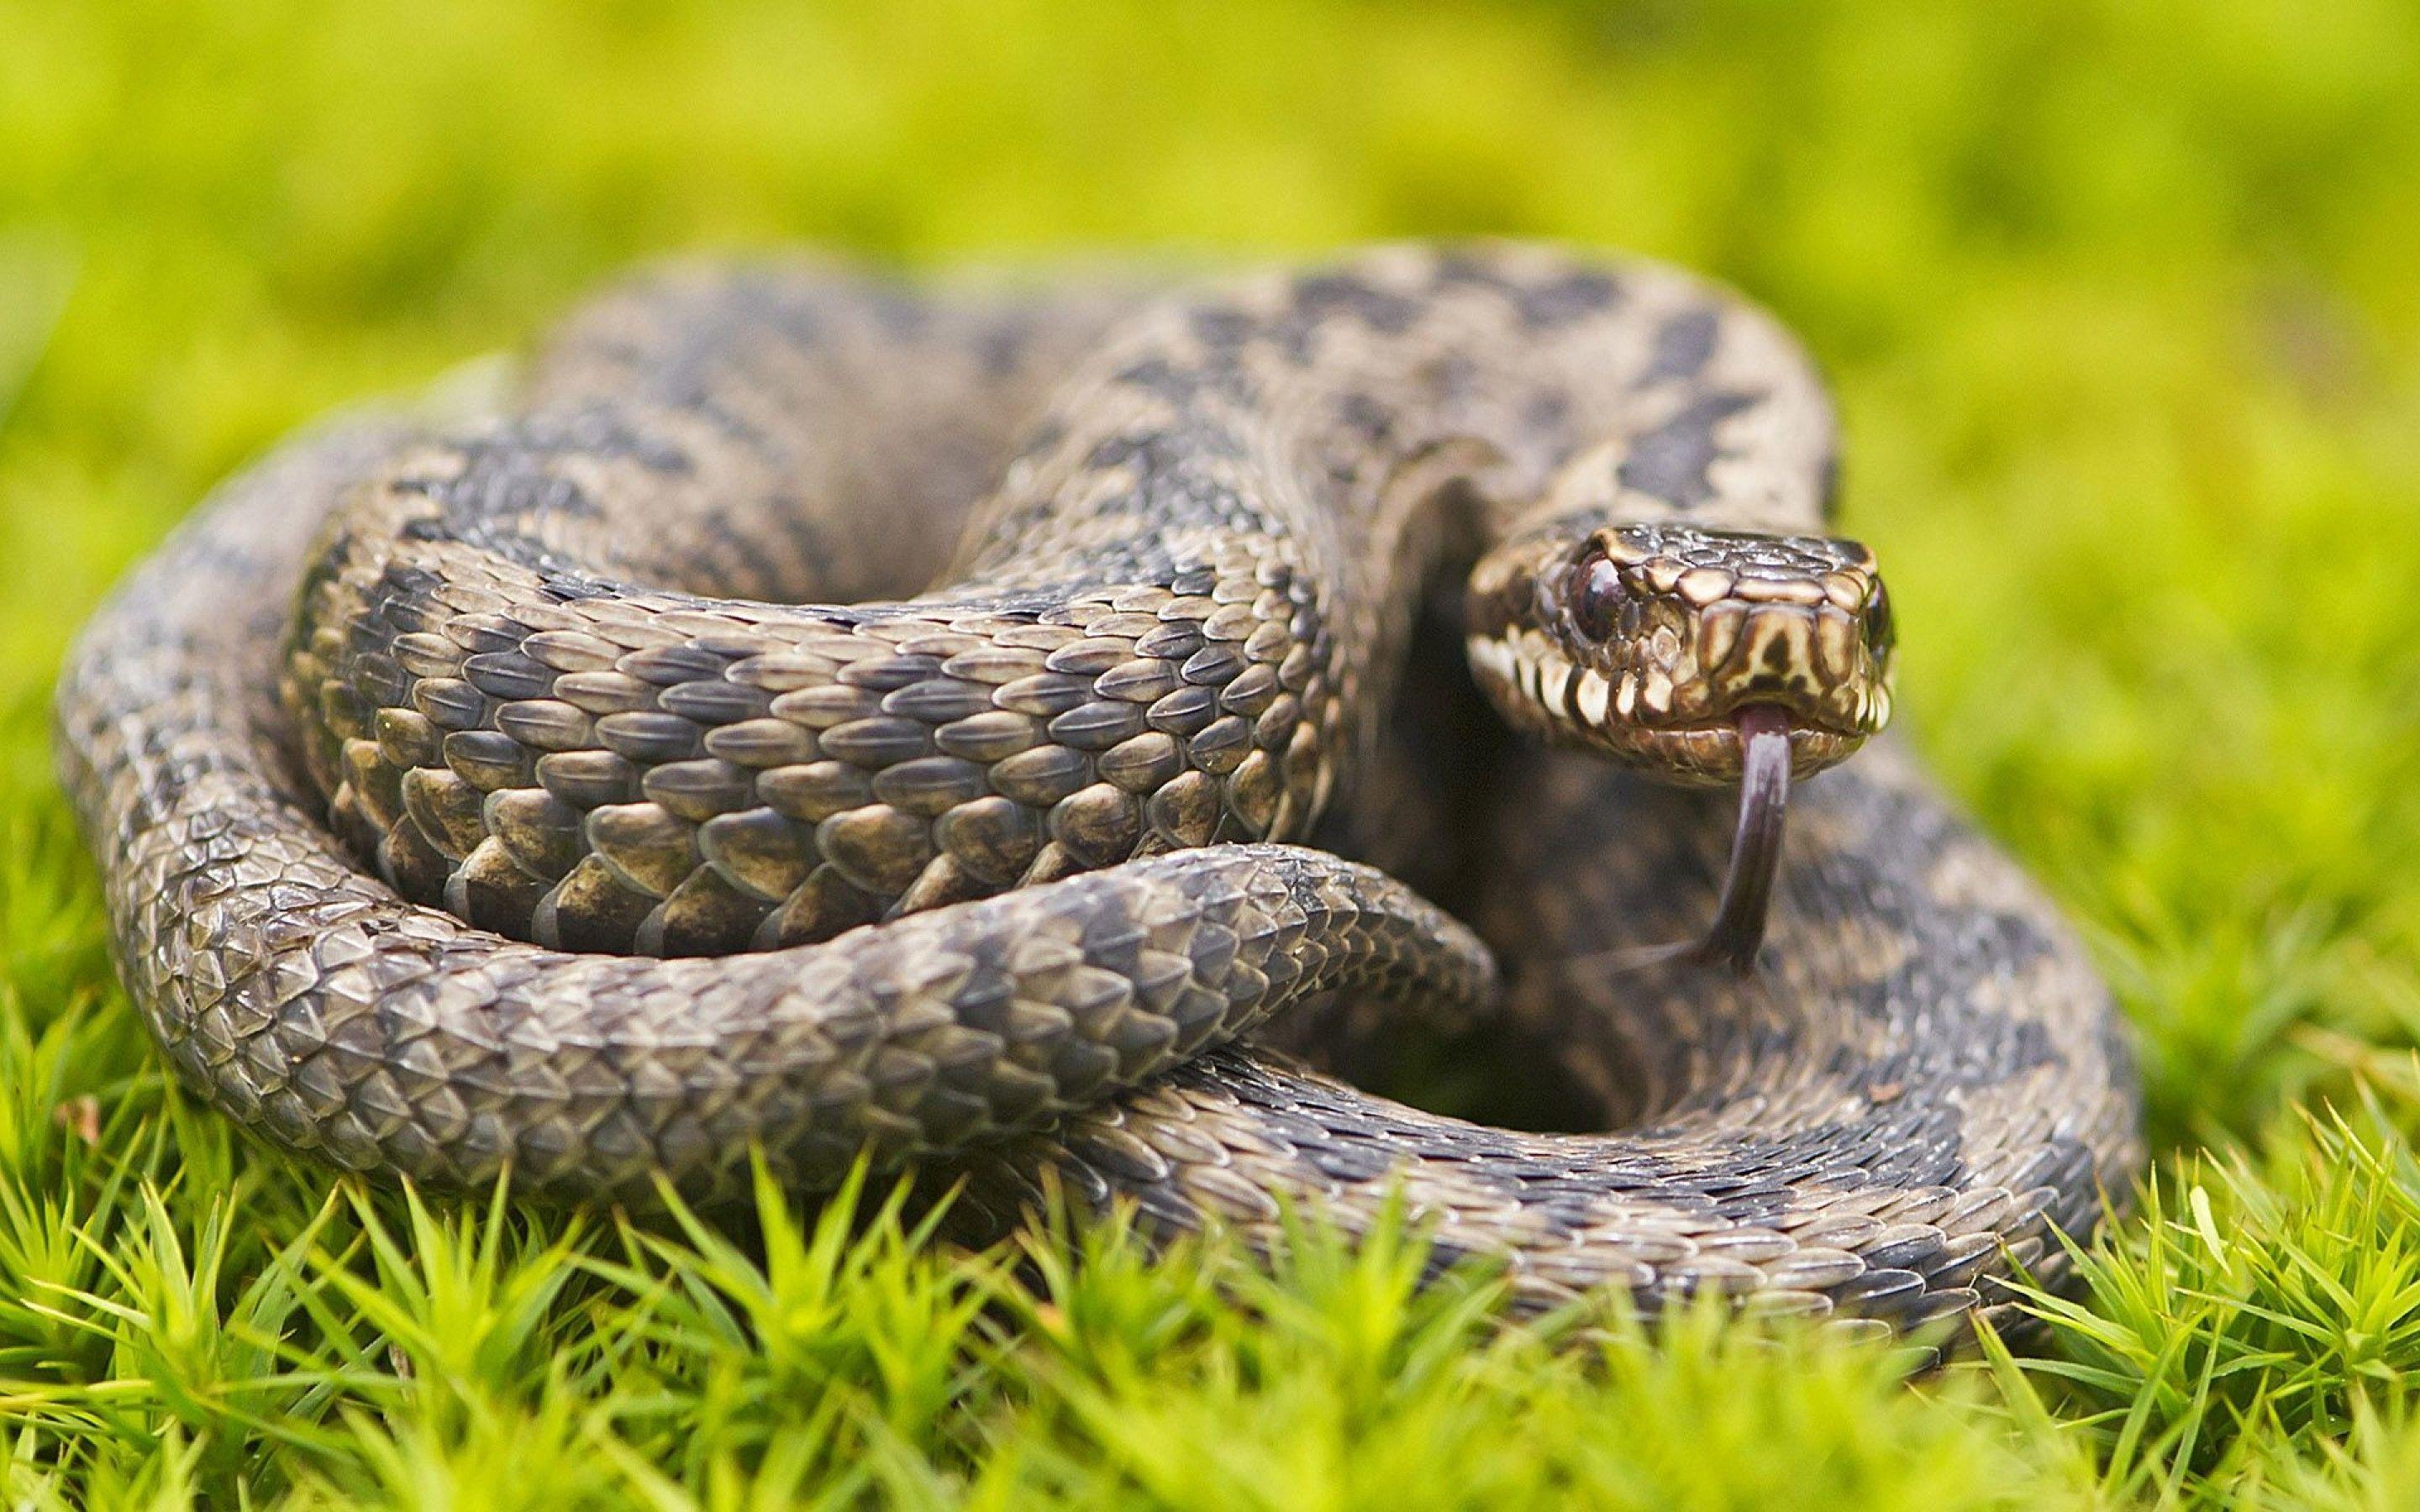 Grass Snake Wallpaper, 46 Desktop Image Of Grass Snake. Grass